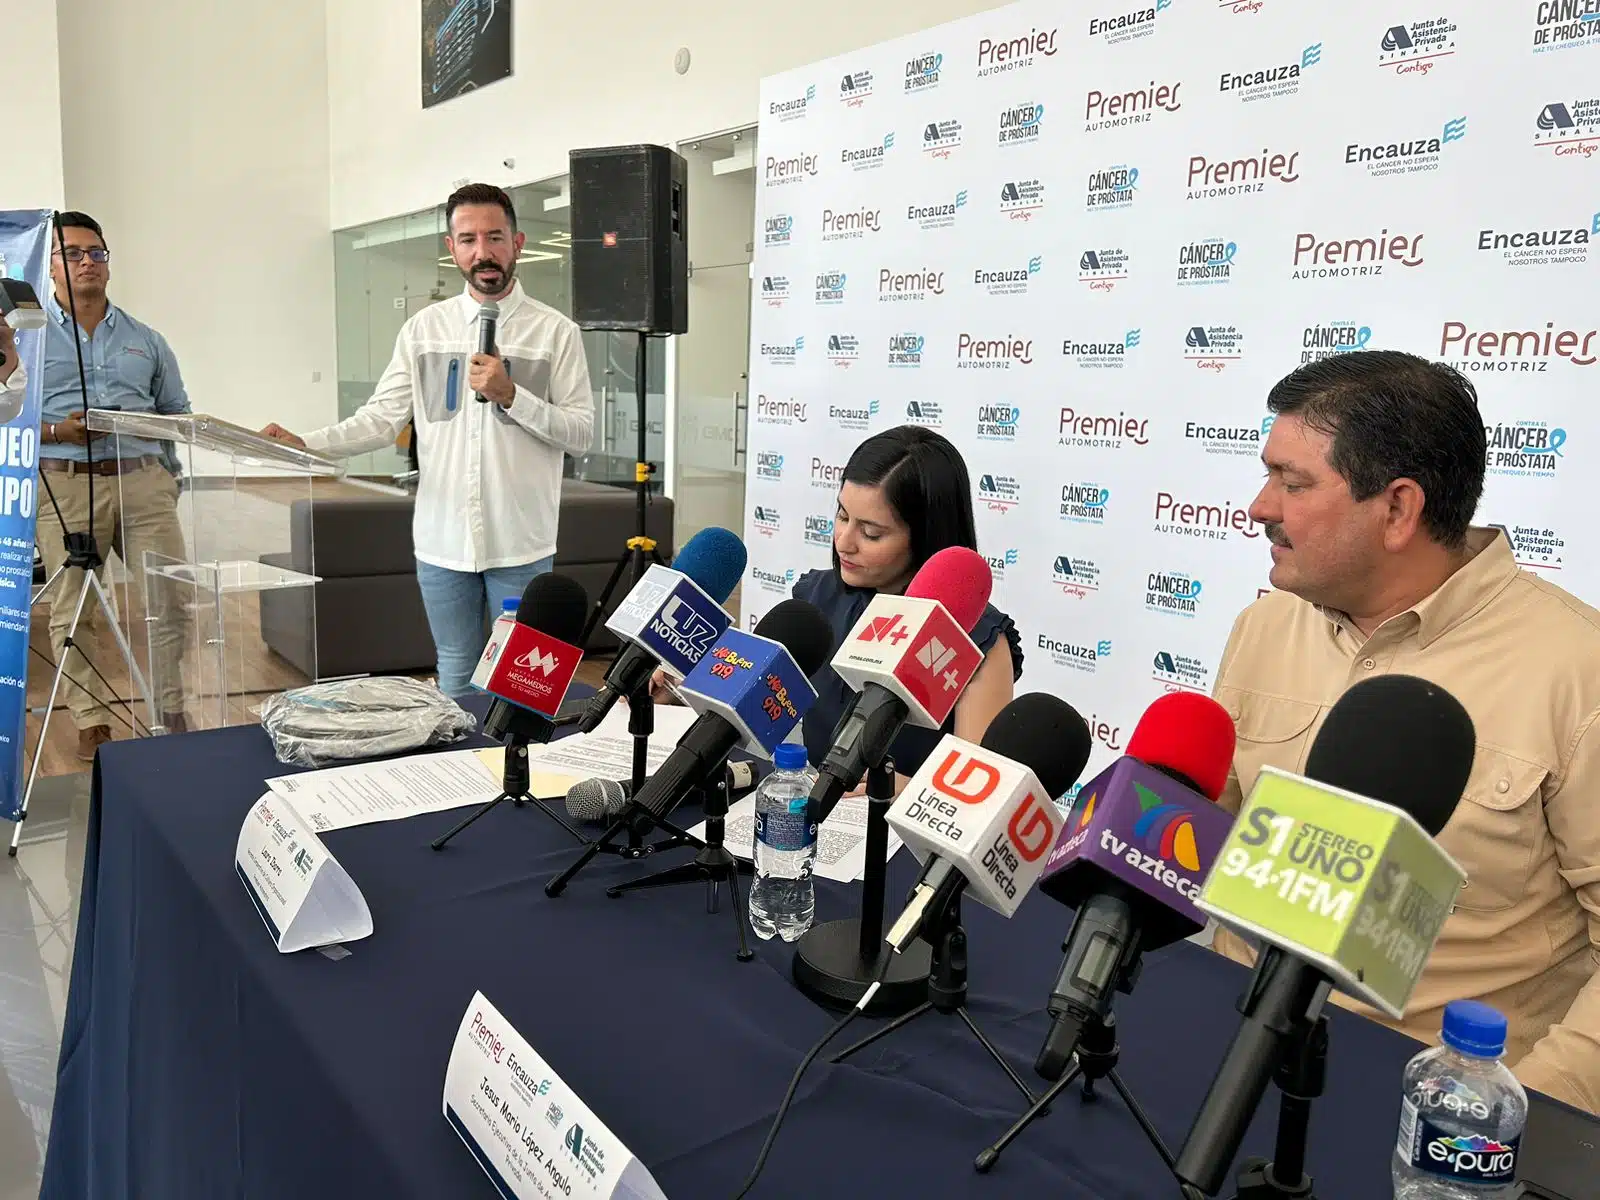 Grupo Premier Automotriz y la Junta de Asistencia Privada Sinaloa buscan recaudar recursos con la campaña “Encauza, el cáncer no espera, nosotros tampoco”